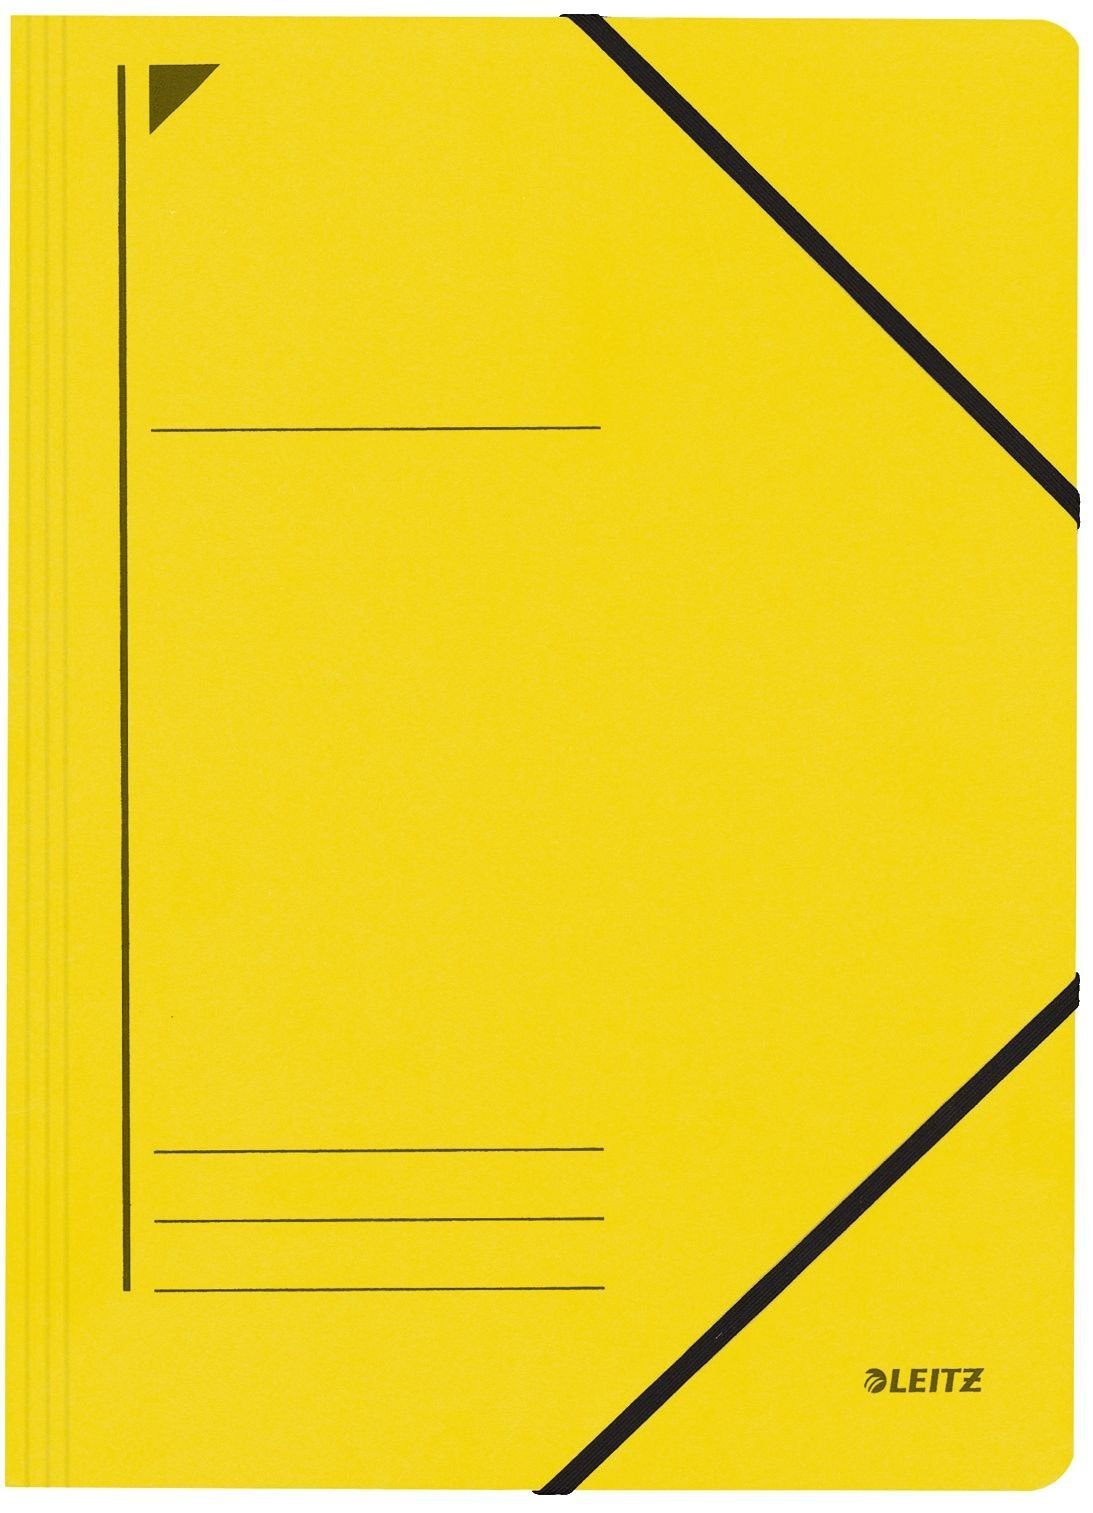 LEITZ Organisationsmappe LEITZ Eckspannermappe, DIN A4, Karton 450 g/qm, gelb